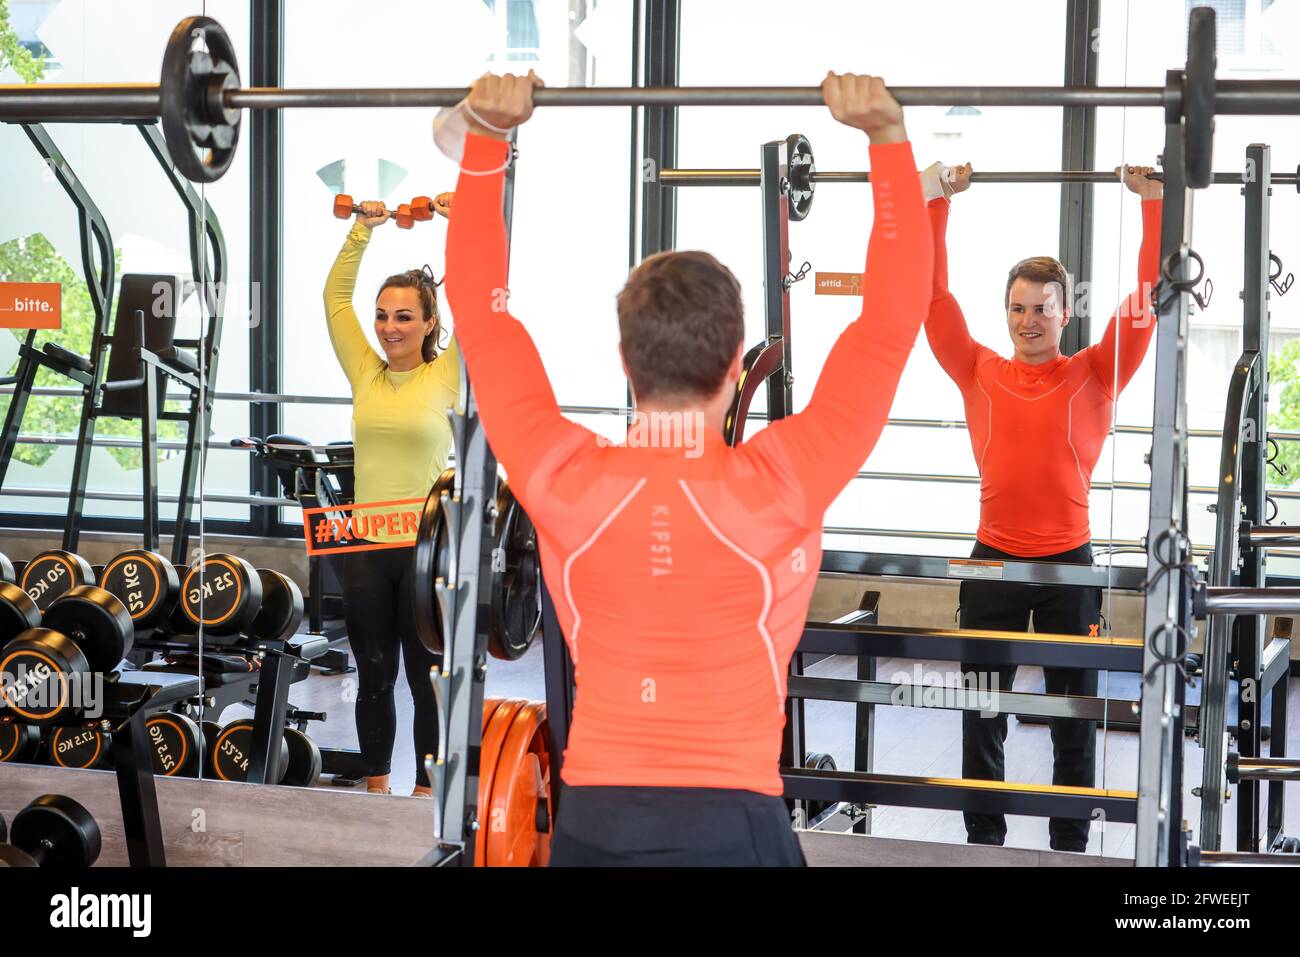 Essen, Nord Reno-Westfalia, Germania - allenamento fitness in tempi della corona Pandemic, Veronika e John sono felici dopo il lungo blocco al thei Foto Stock